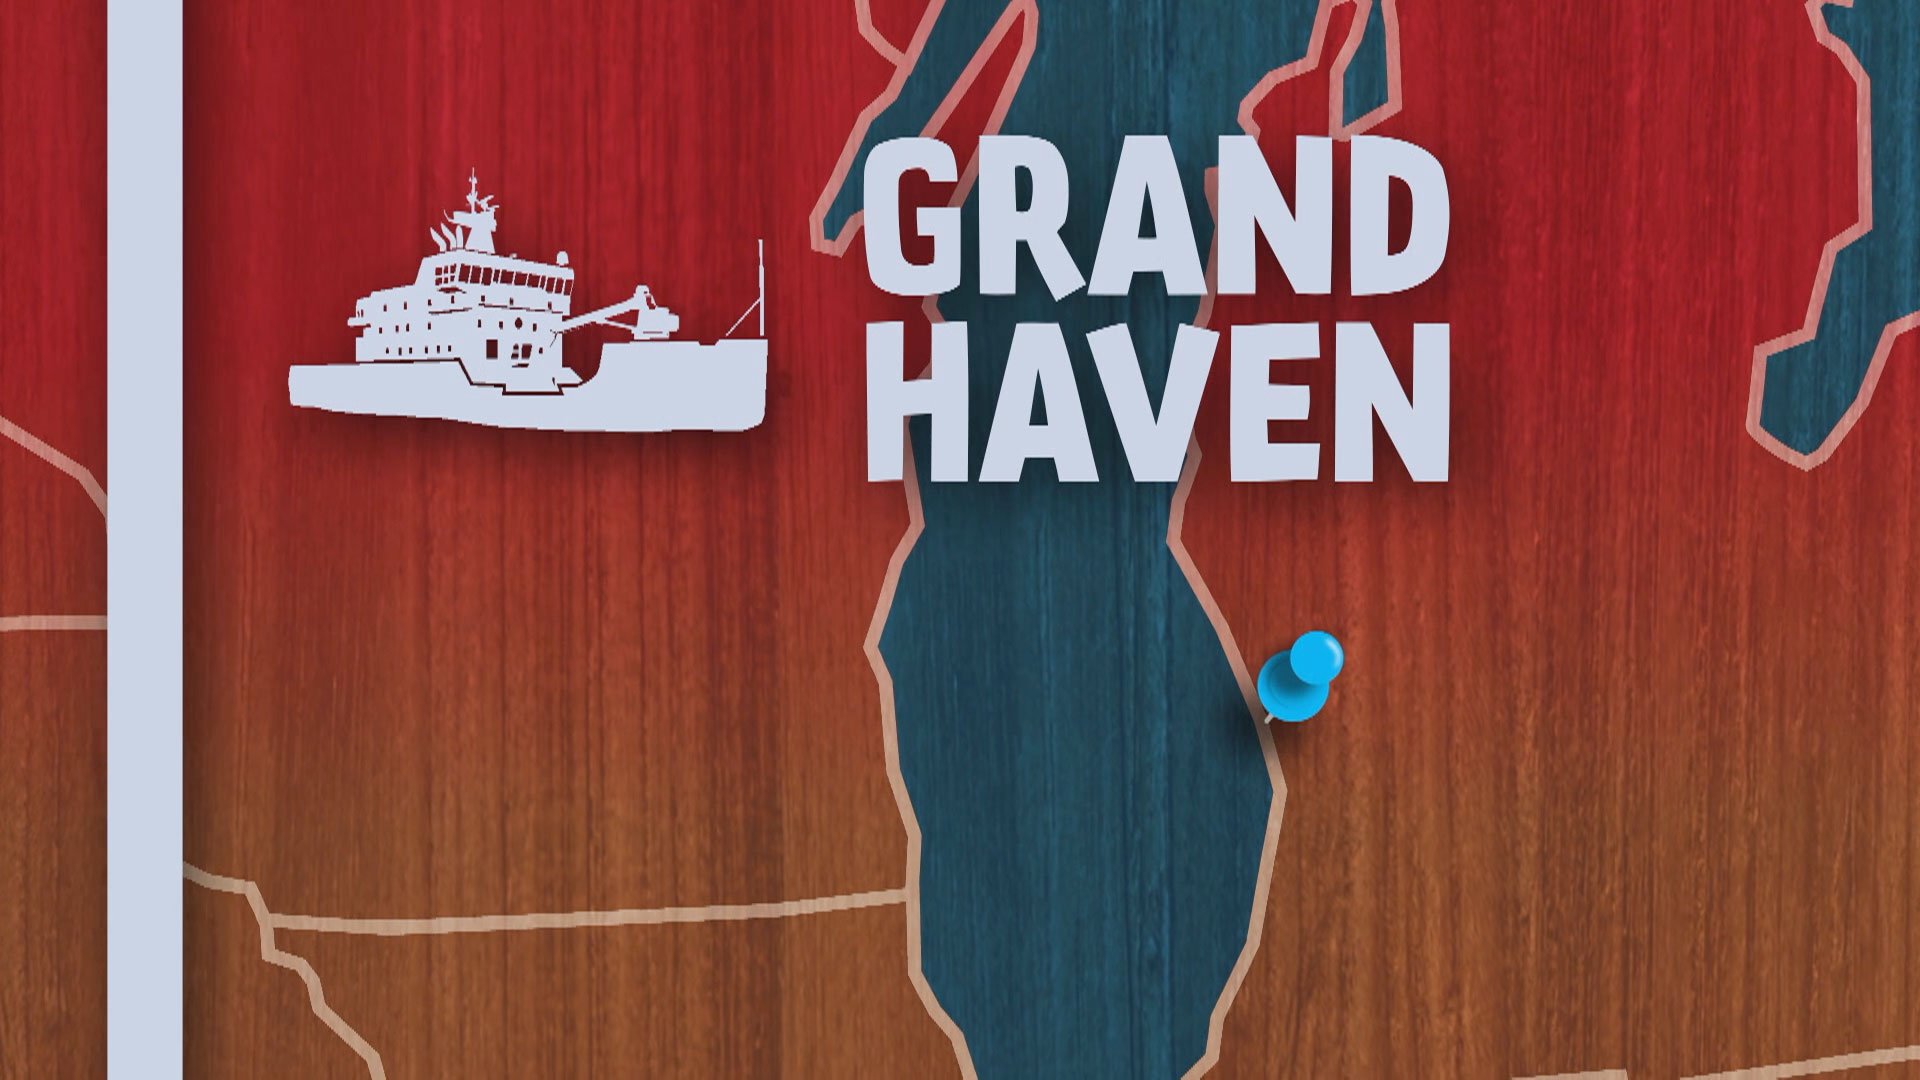 Grand Haven, Michigan